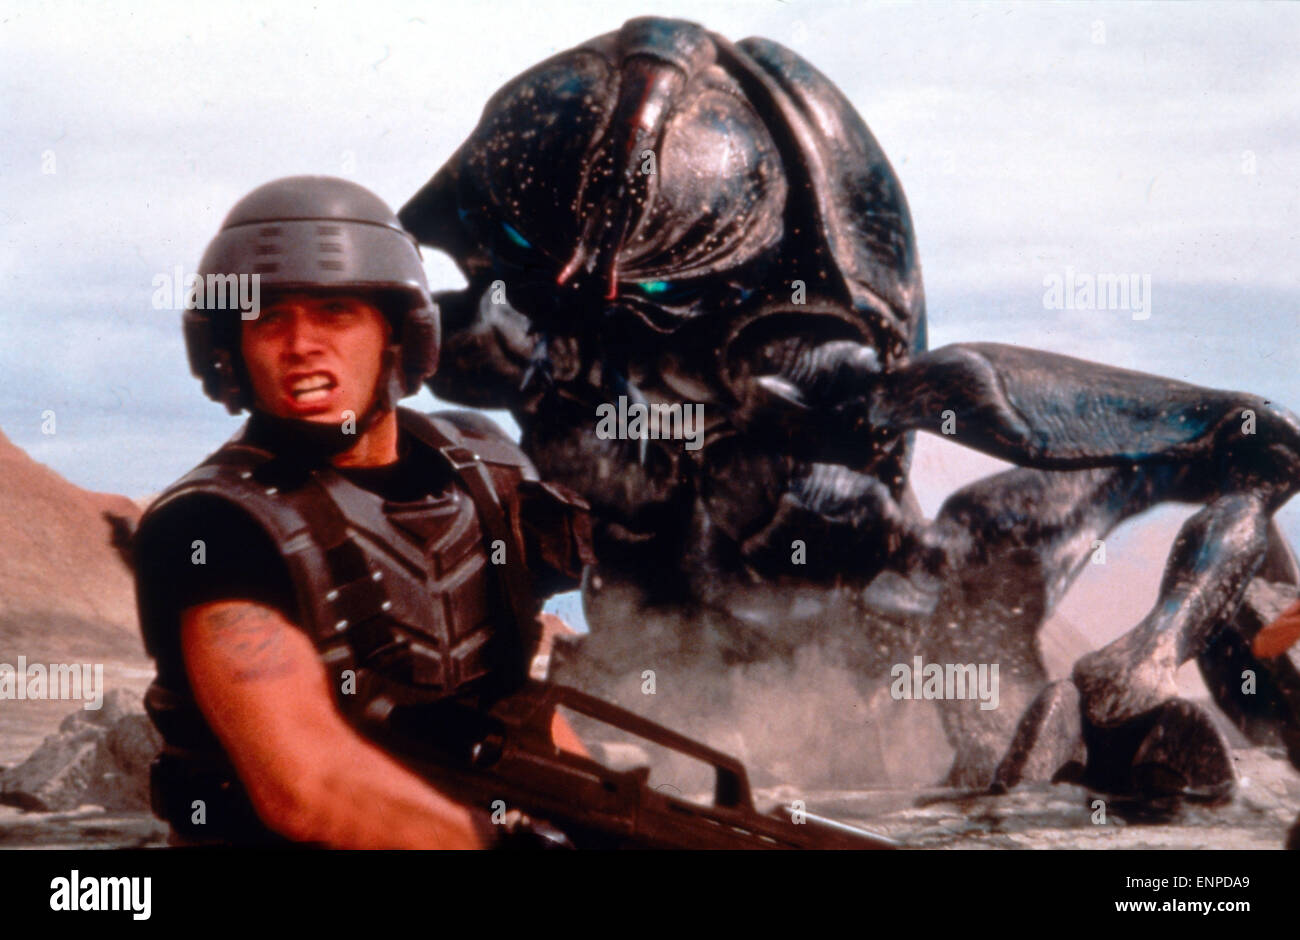 Starship Troopers, USA 1997, Regie: Paul Verhoeven, Darsteller: Casper van Dien, Stock Photo